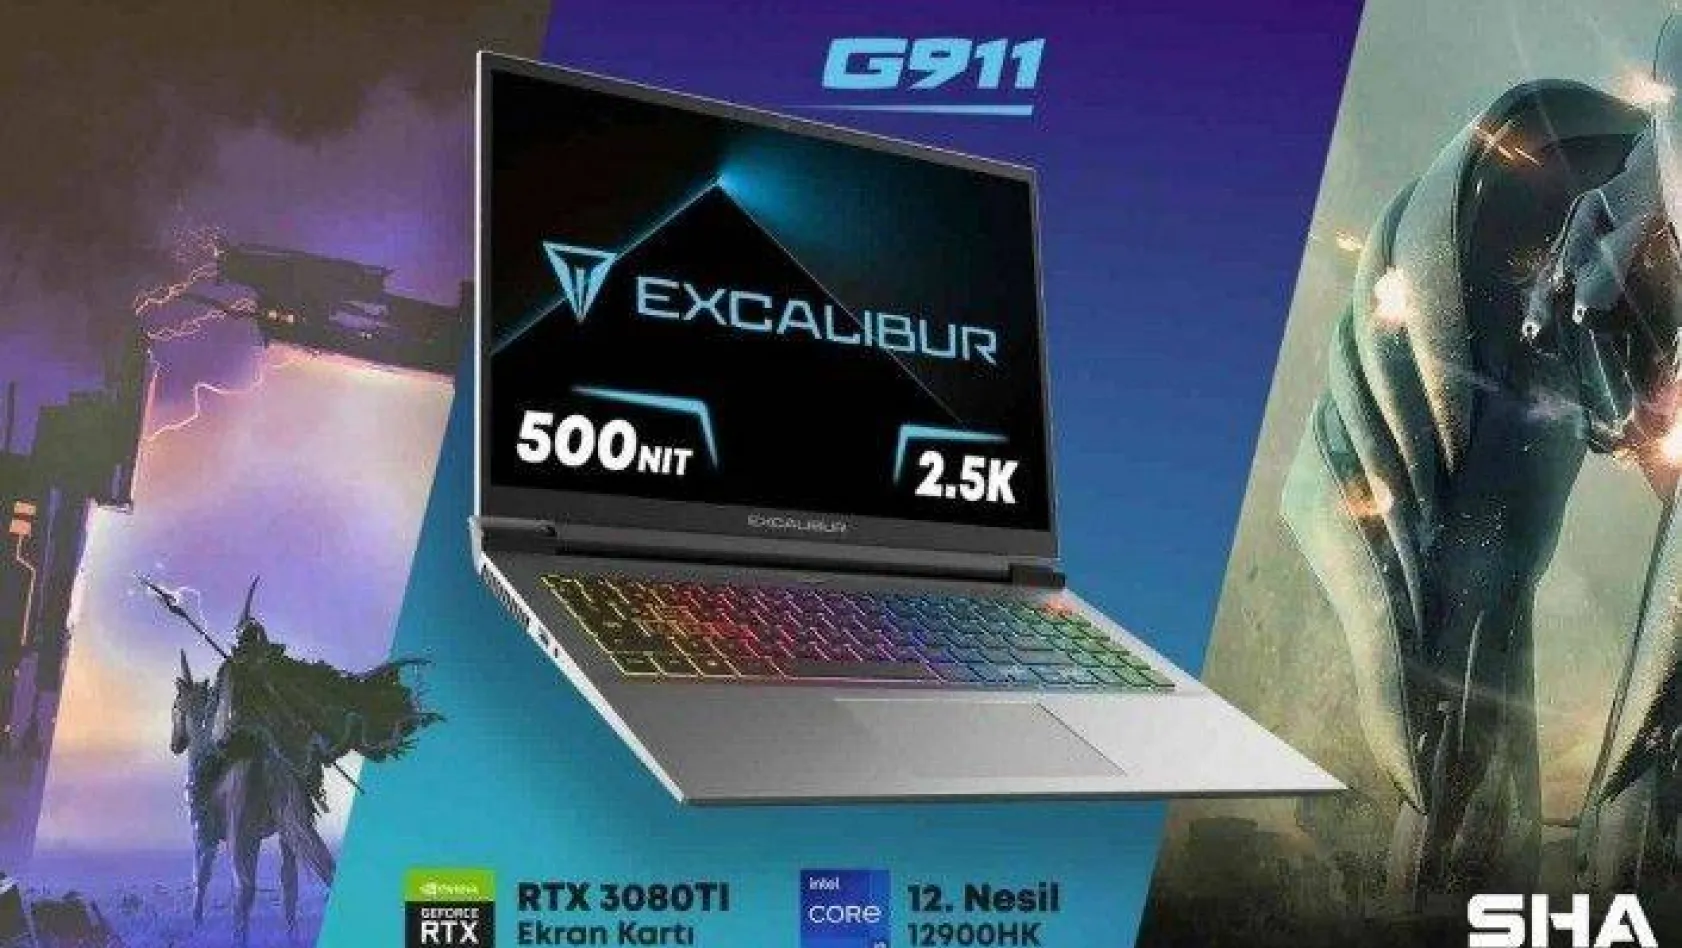 Yeni Excalibur G911 satışa çıktı